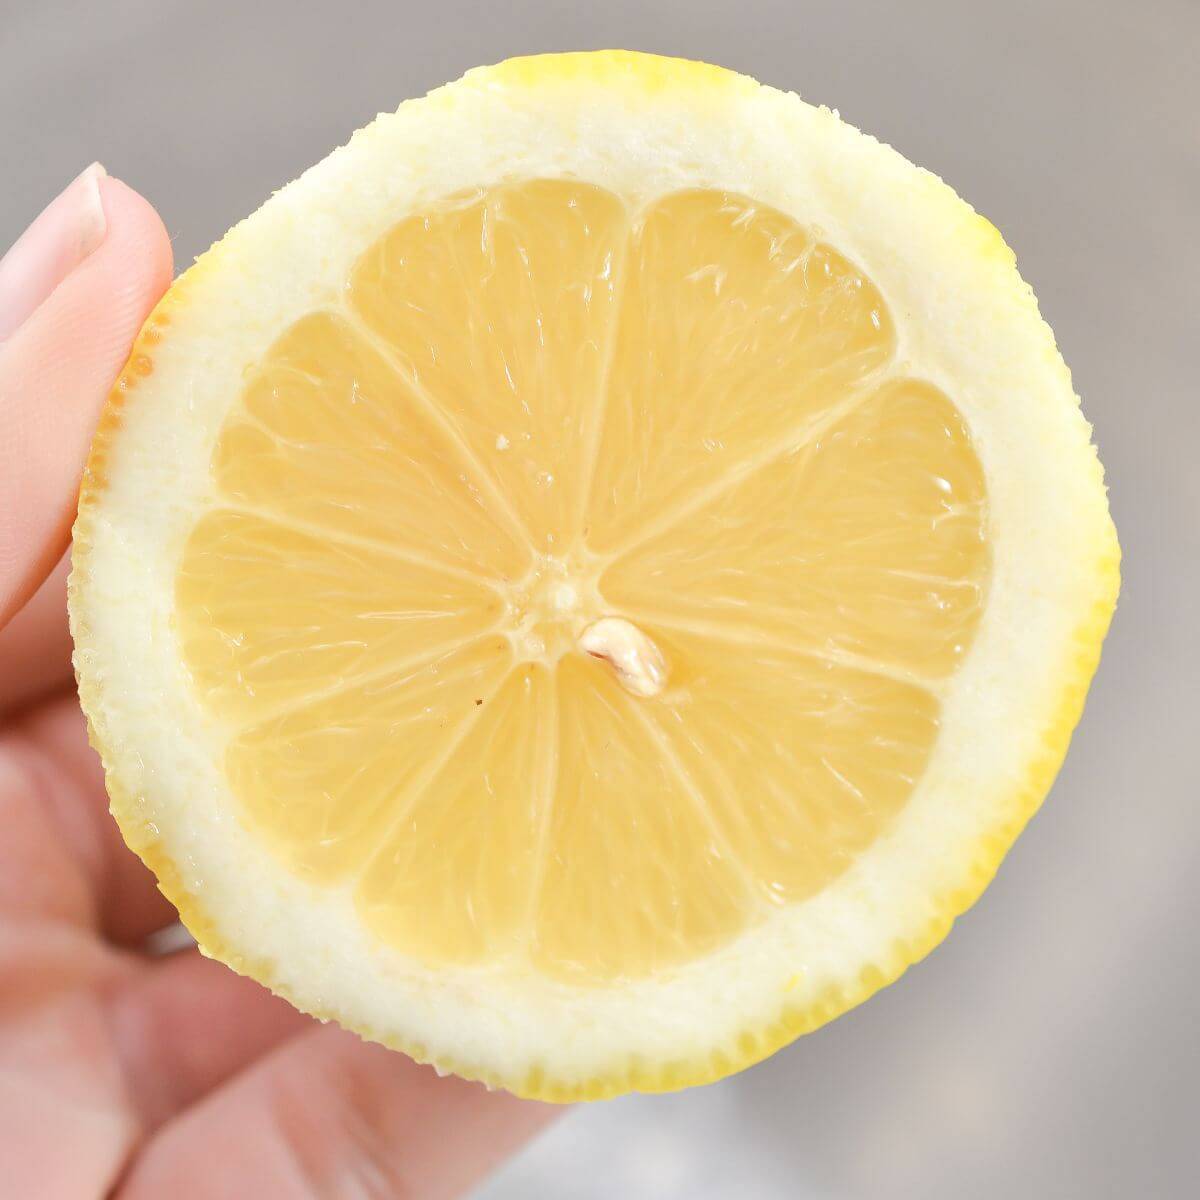 holding round lemon slice.